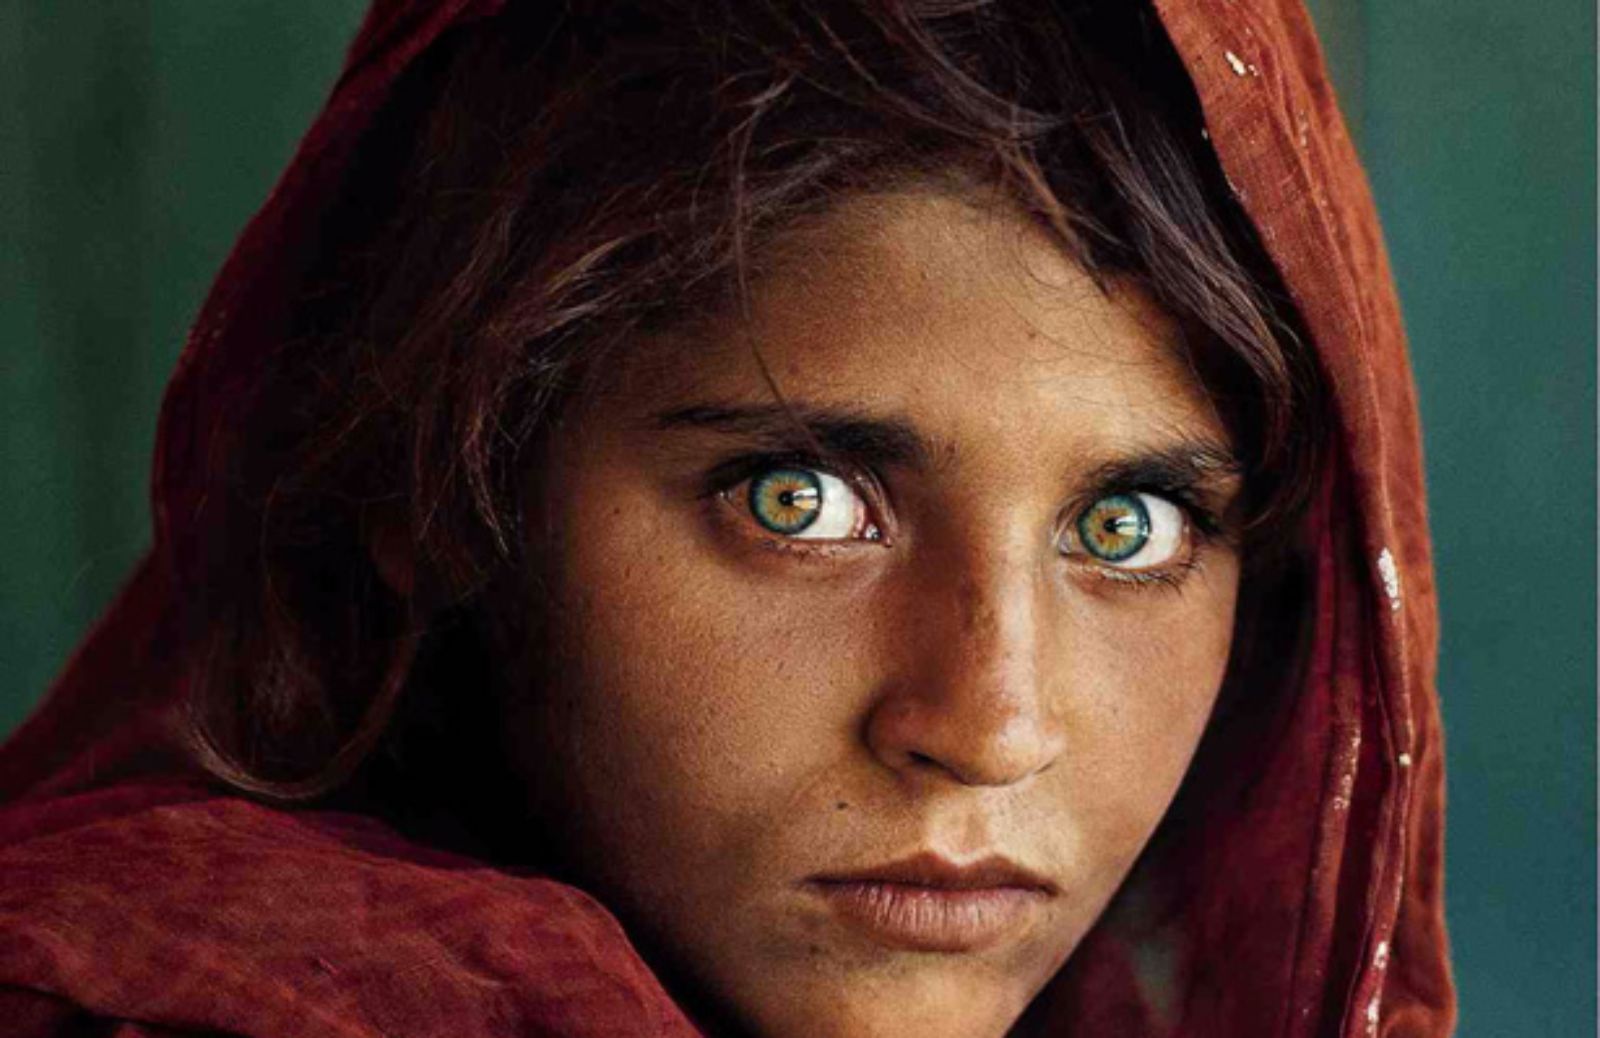 La mostra fotografica di Steve McCurry: oltre lo sguardo